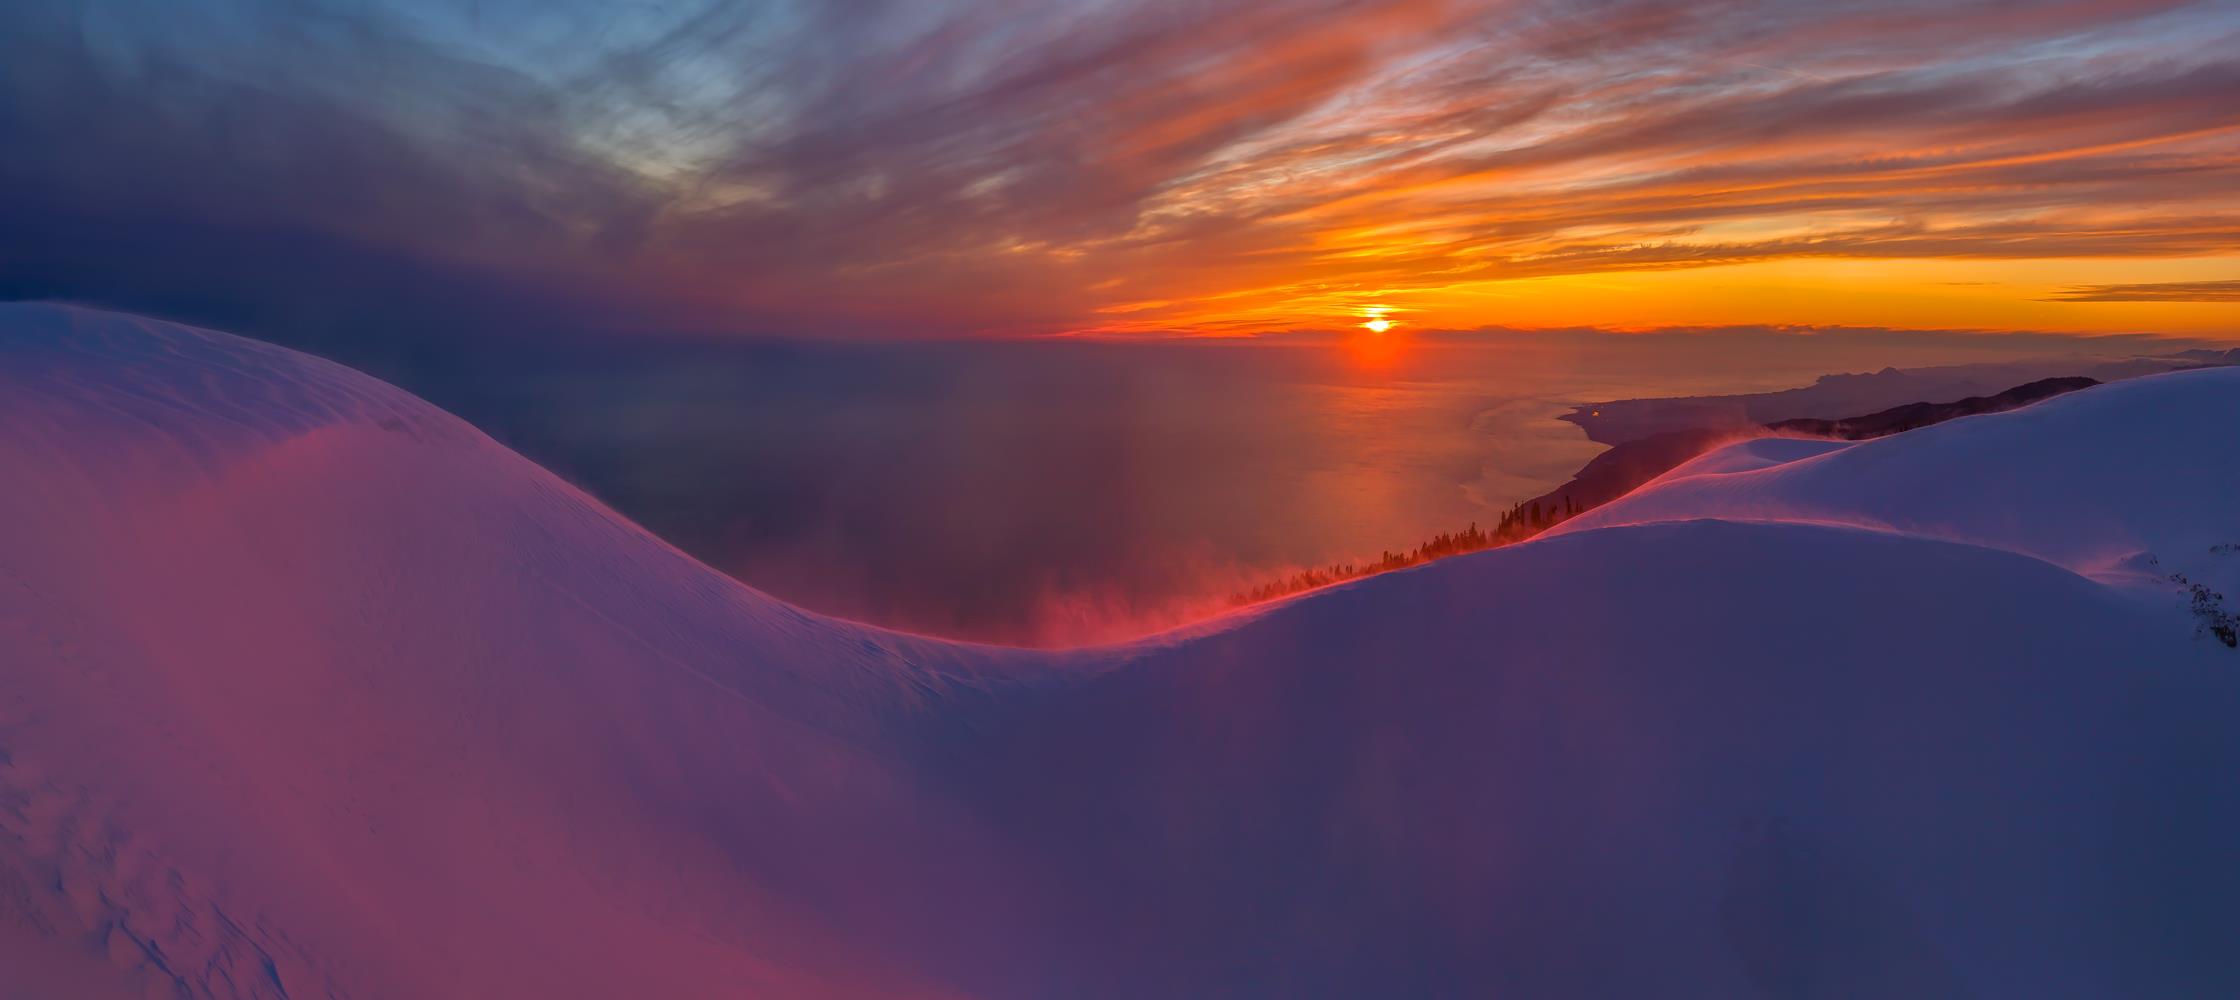 Снежные вершины над морем 1 - интерьерная фотокартина